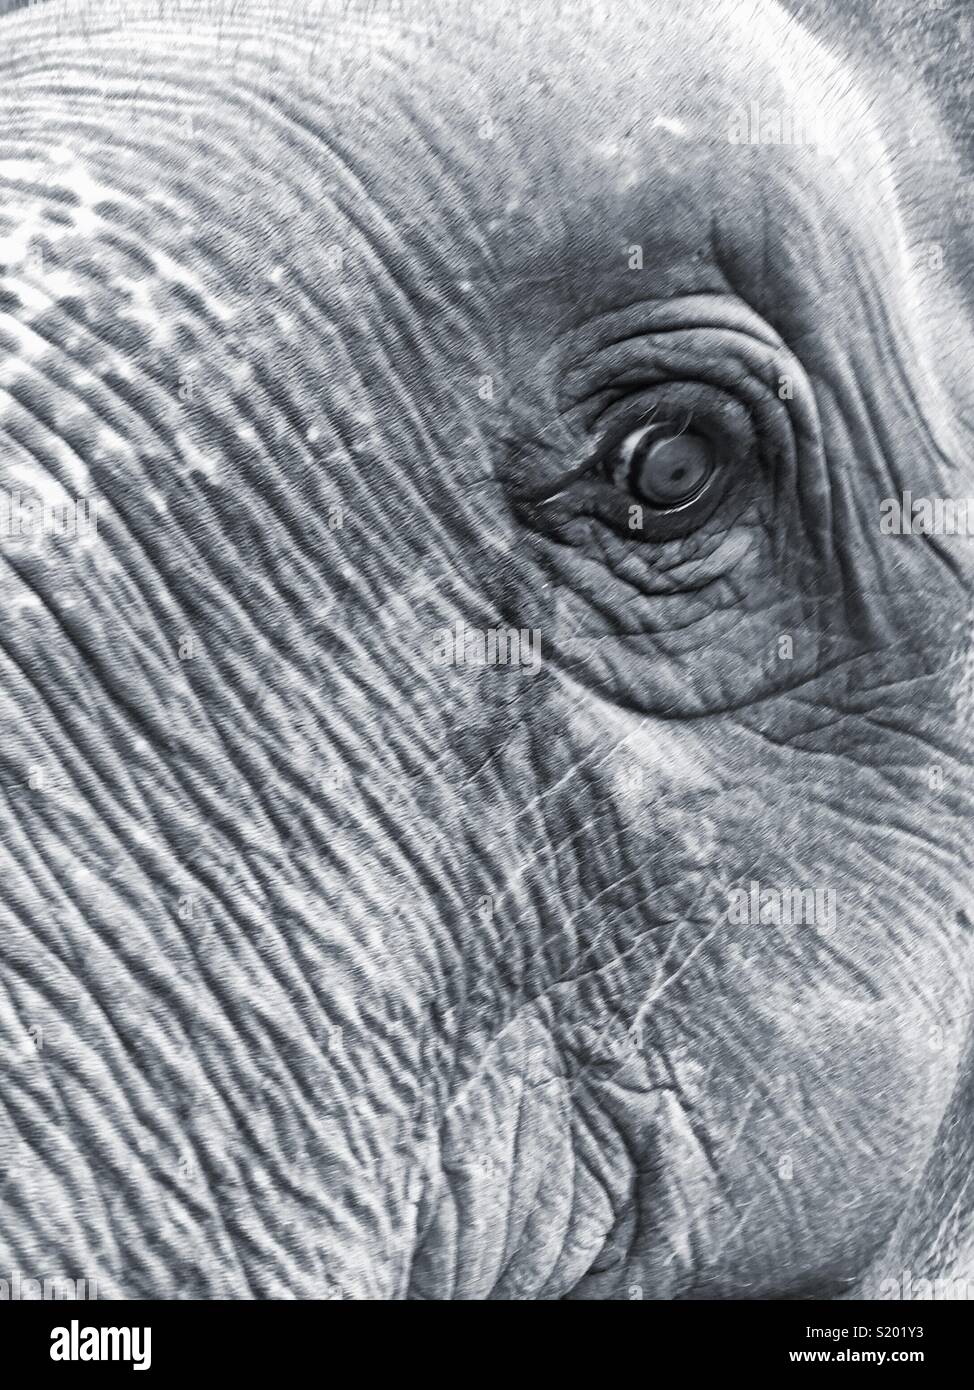 Fermer les yeux et le visage de l'éléphant Banque D'Images